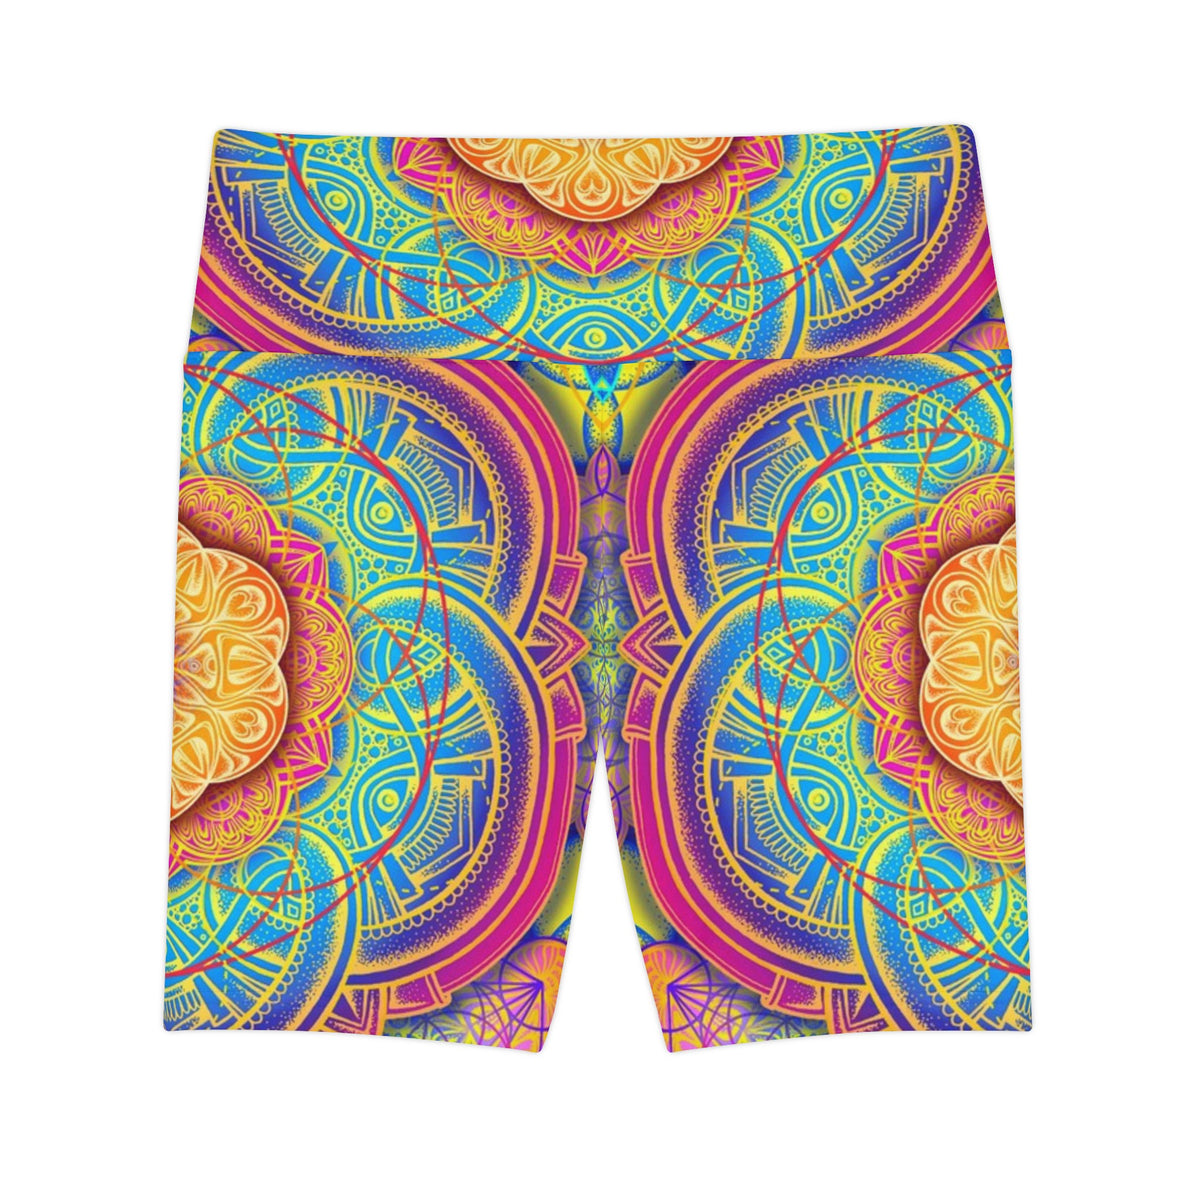 Mandala Workout Shorts